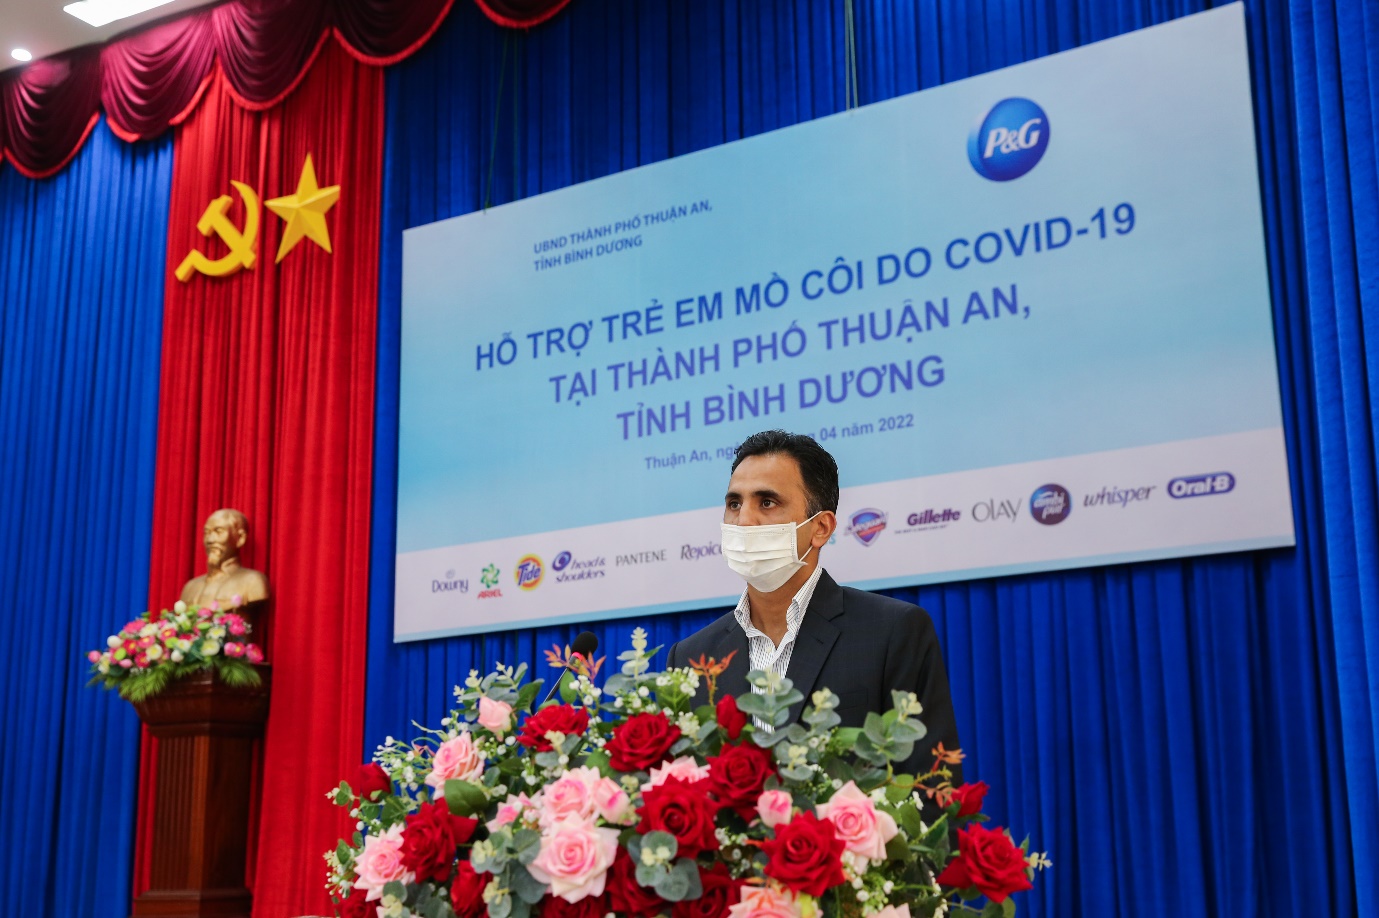 Công ty P&G Việt Nam tiếp tục đồng hành cùng tỉnh Bình Dương hỗ trợ trẻ em mồ côi do Covid-19 - Ảnh 3.